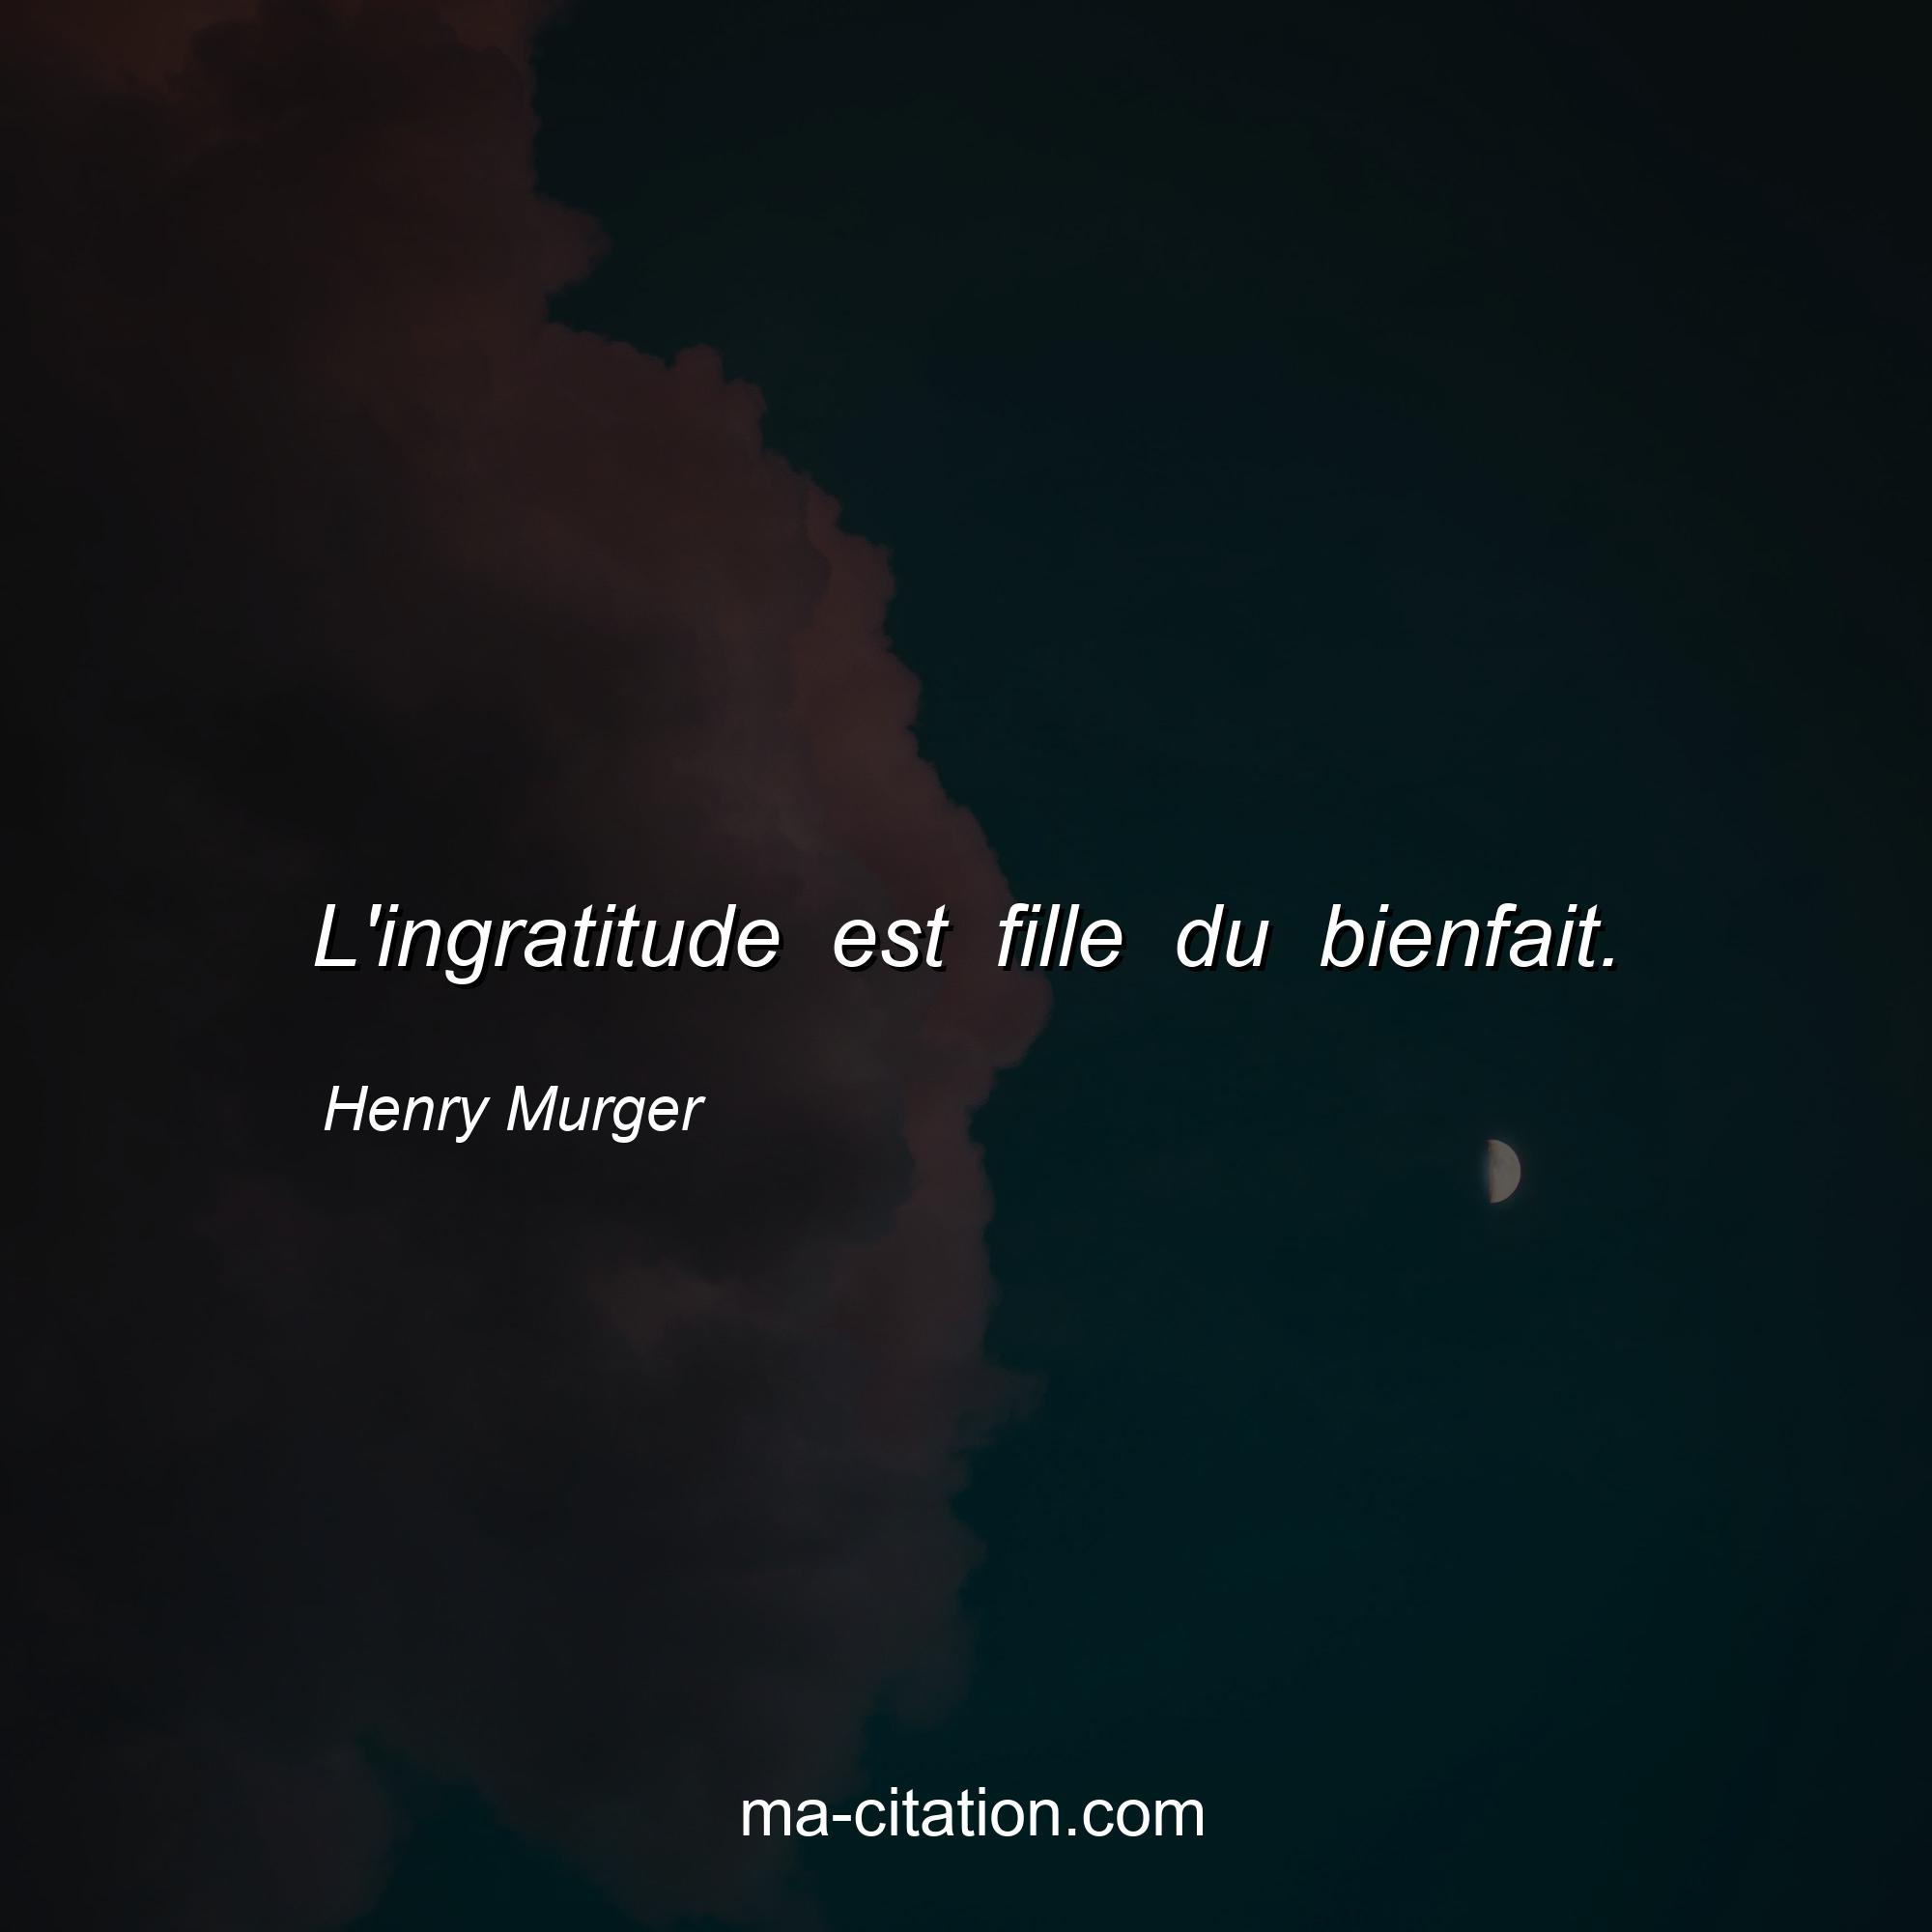 Henry Murger : L'ingratitude est fille du bienfait.